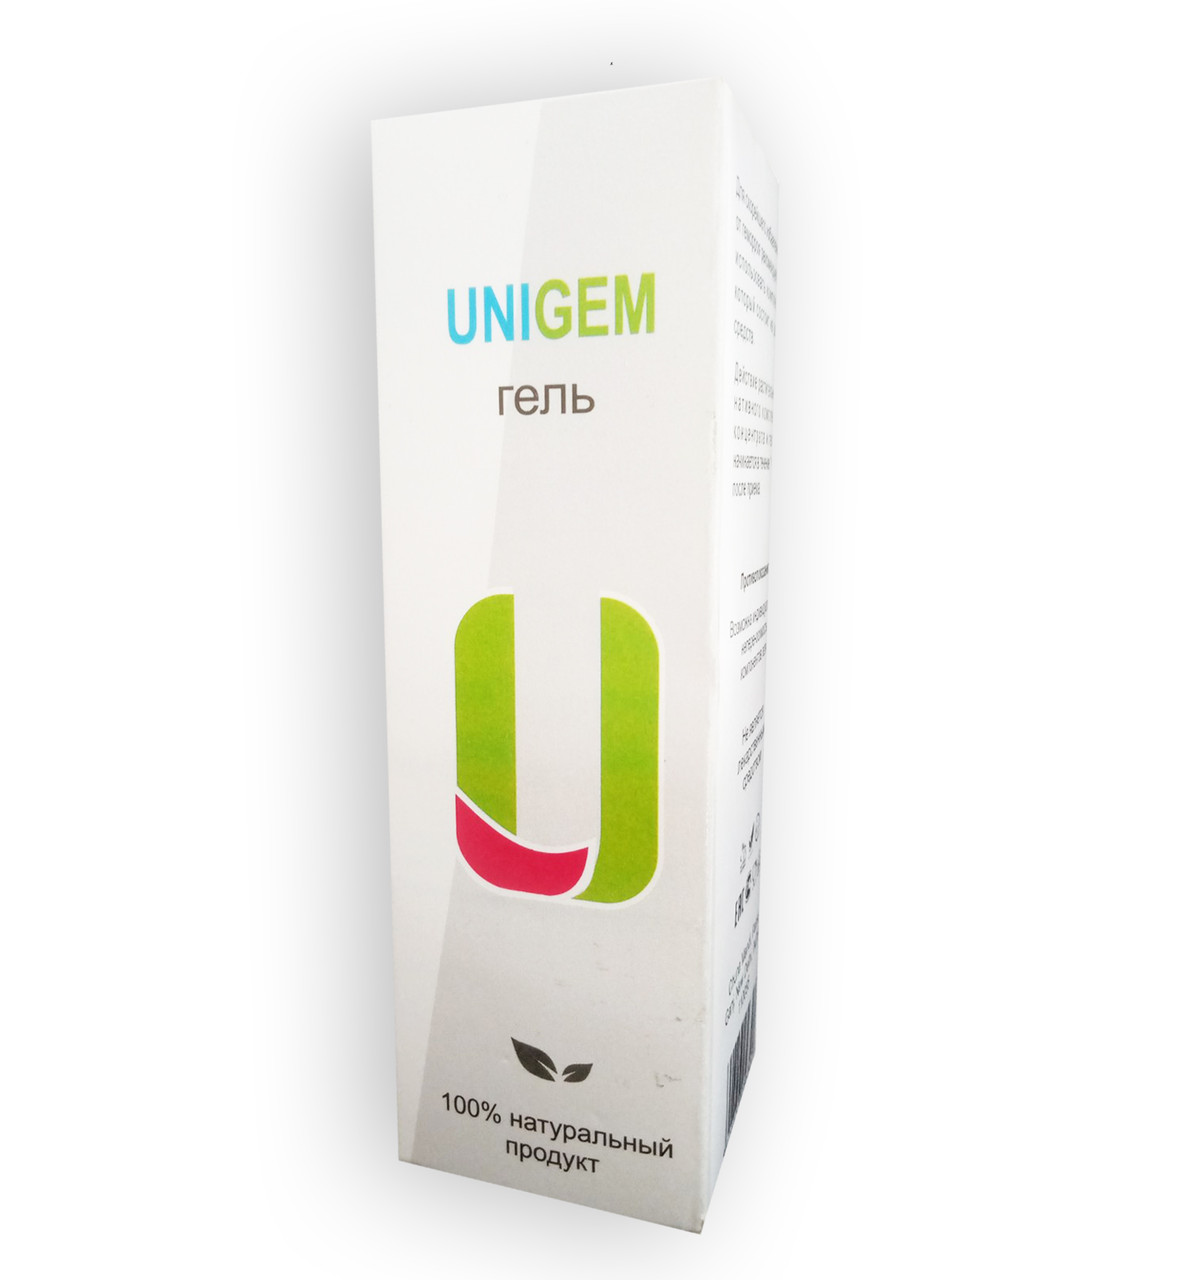 Unigem - Гель від геморою (ЮниГем)